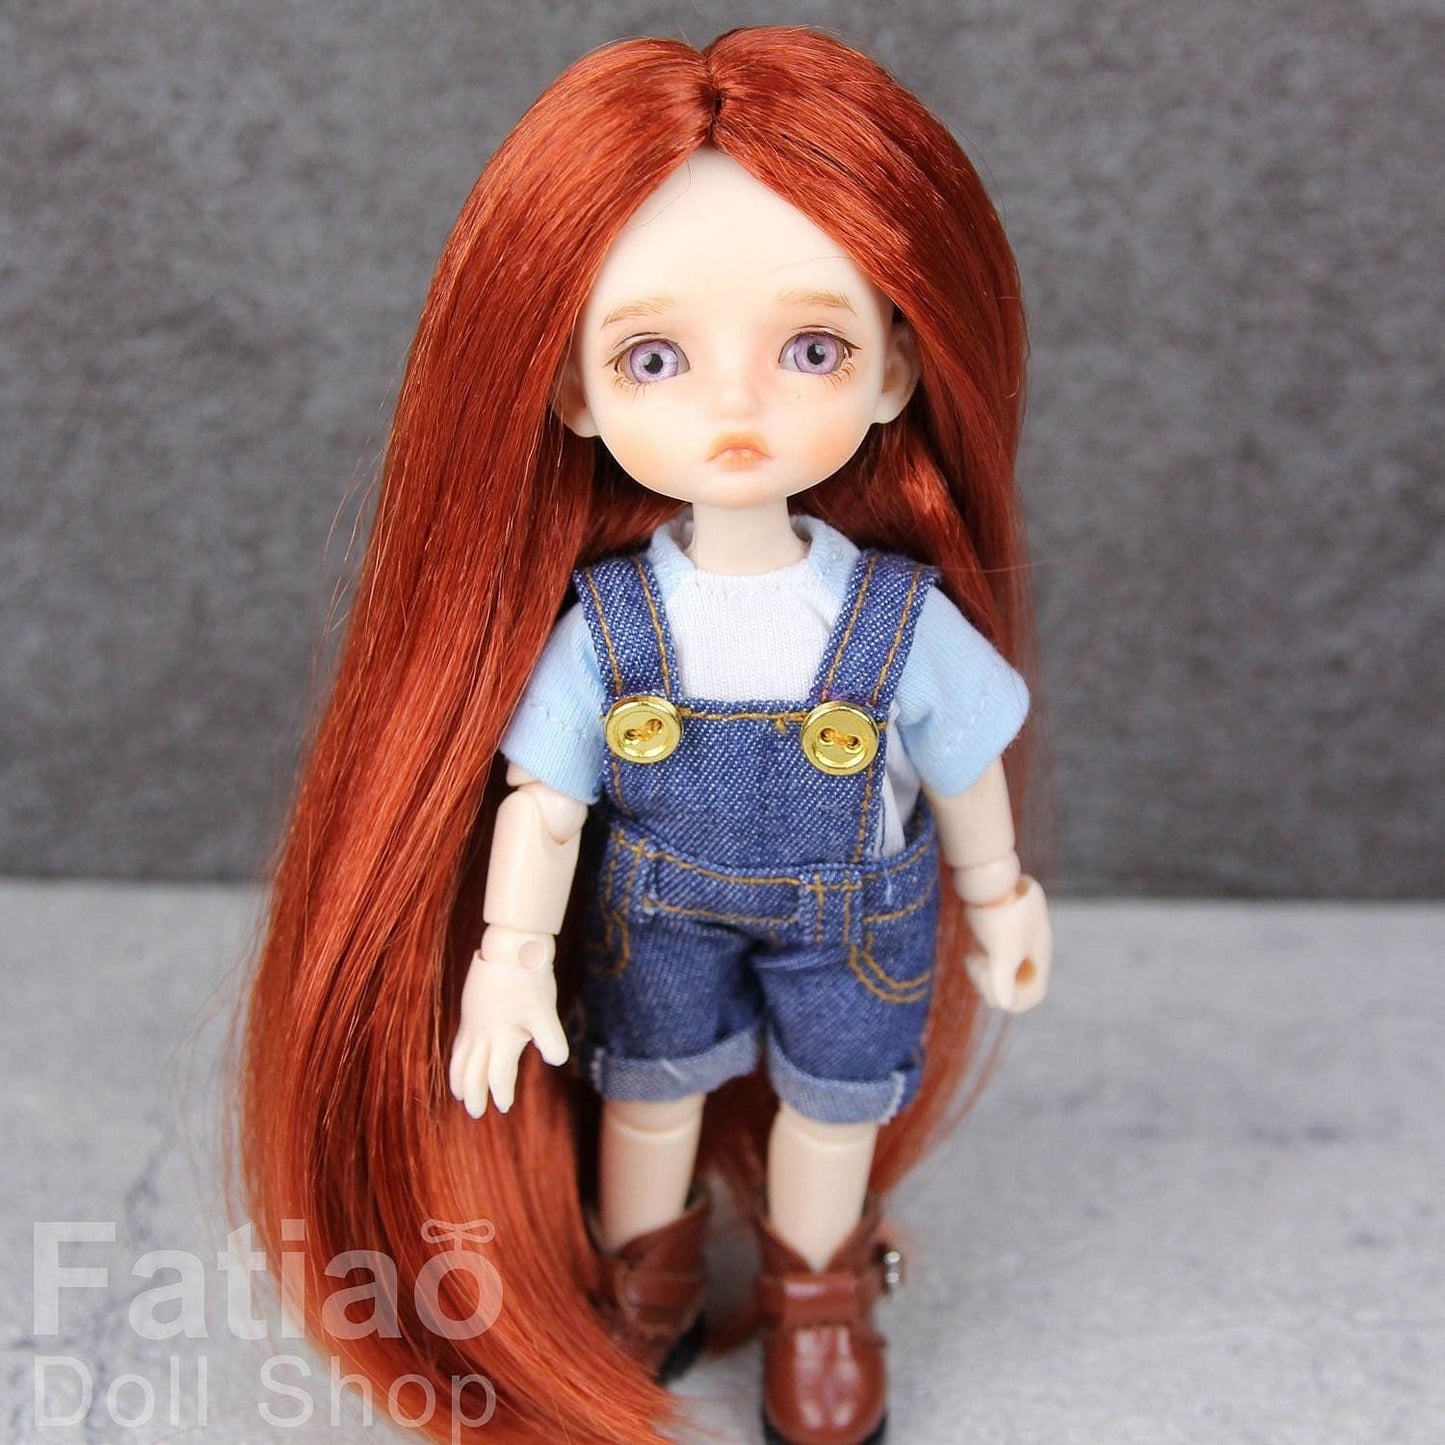 【Fatiao Doll Shop】FWF- 娃用假髮 多色 BJD